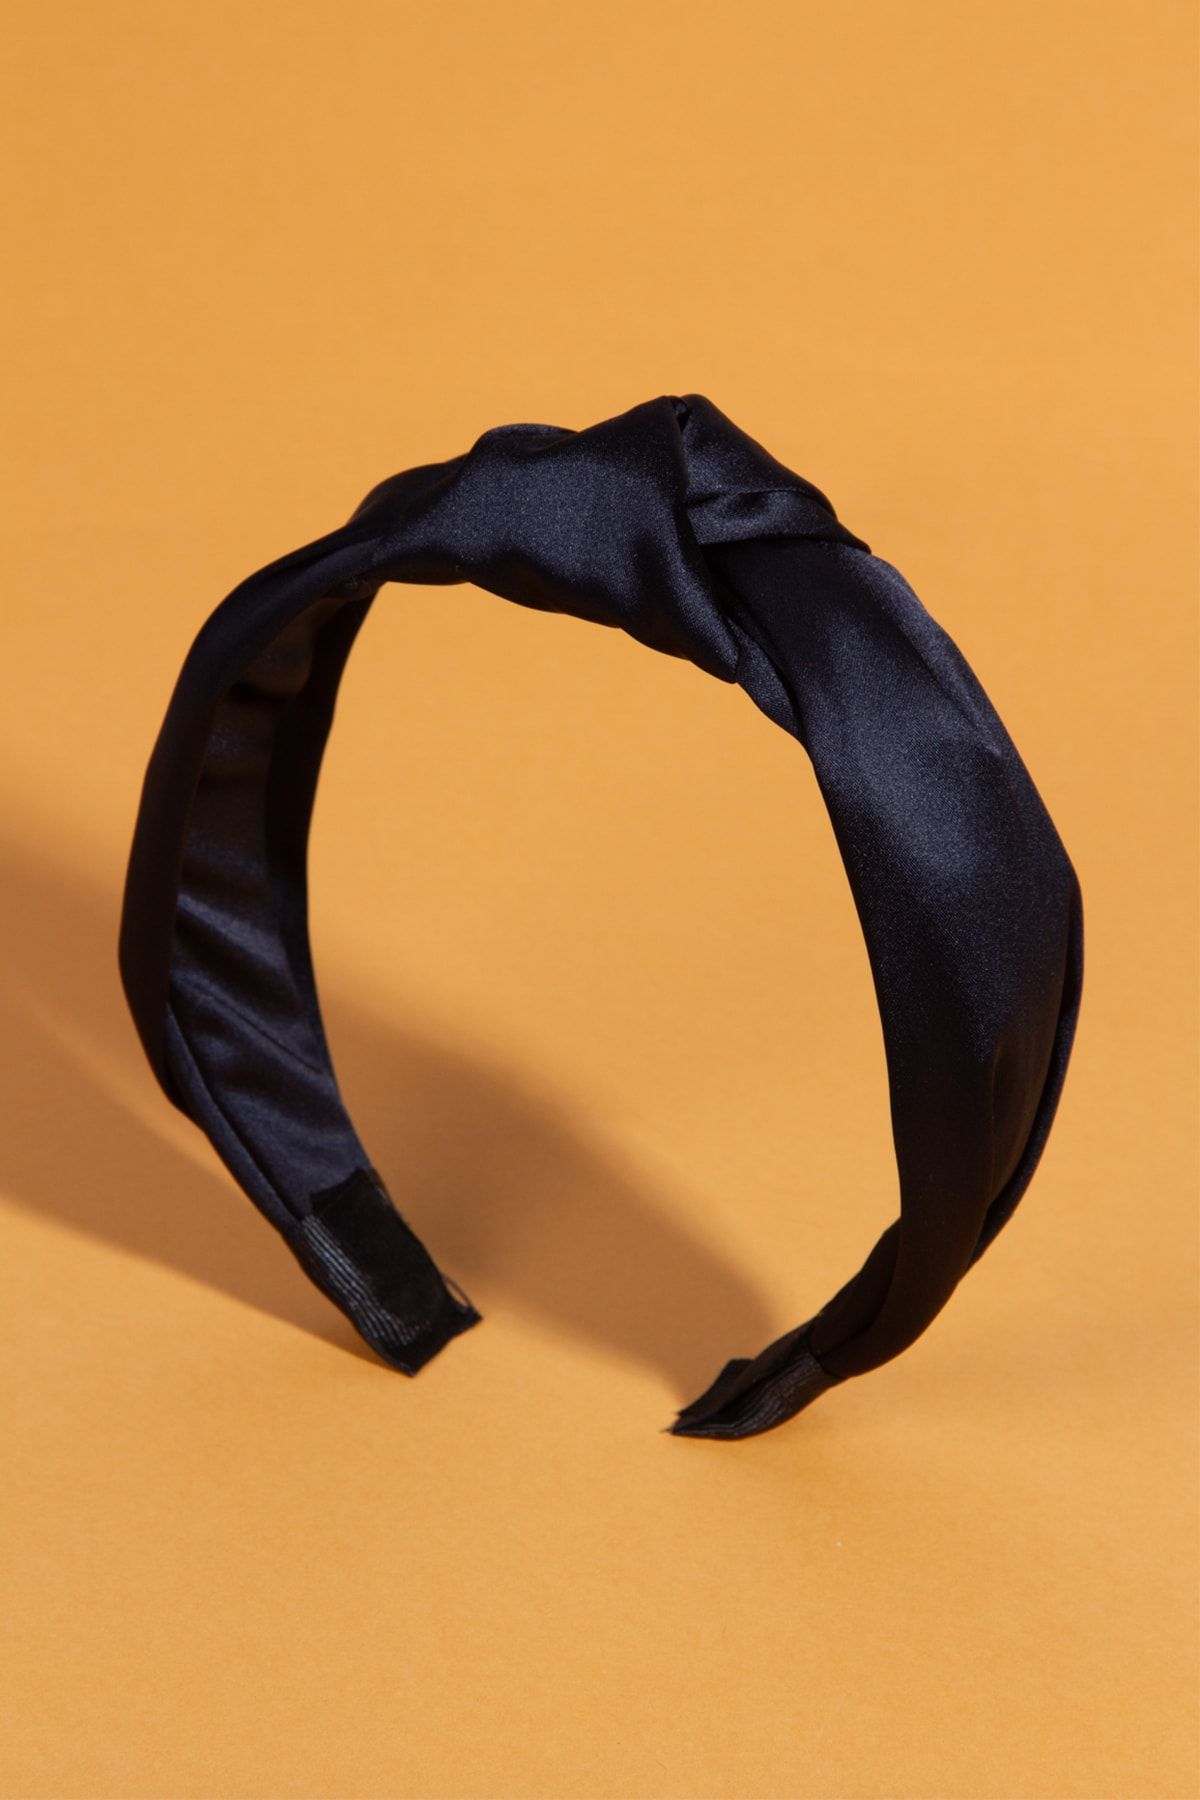 BAHELS Kadın Siyah Renk Saten Düğümlü Lüx Model Taç Saç Bandı